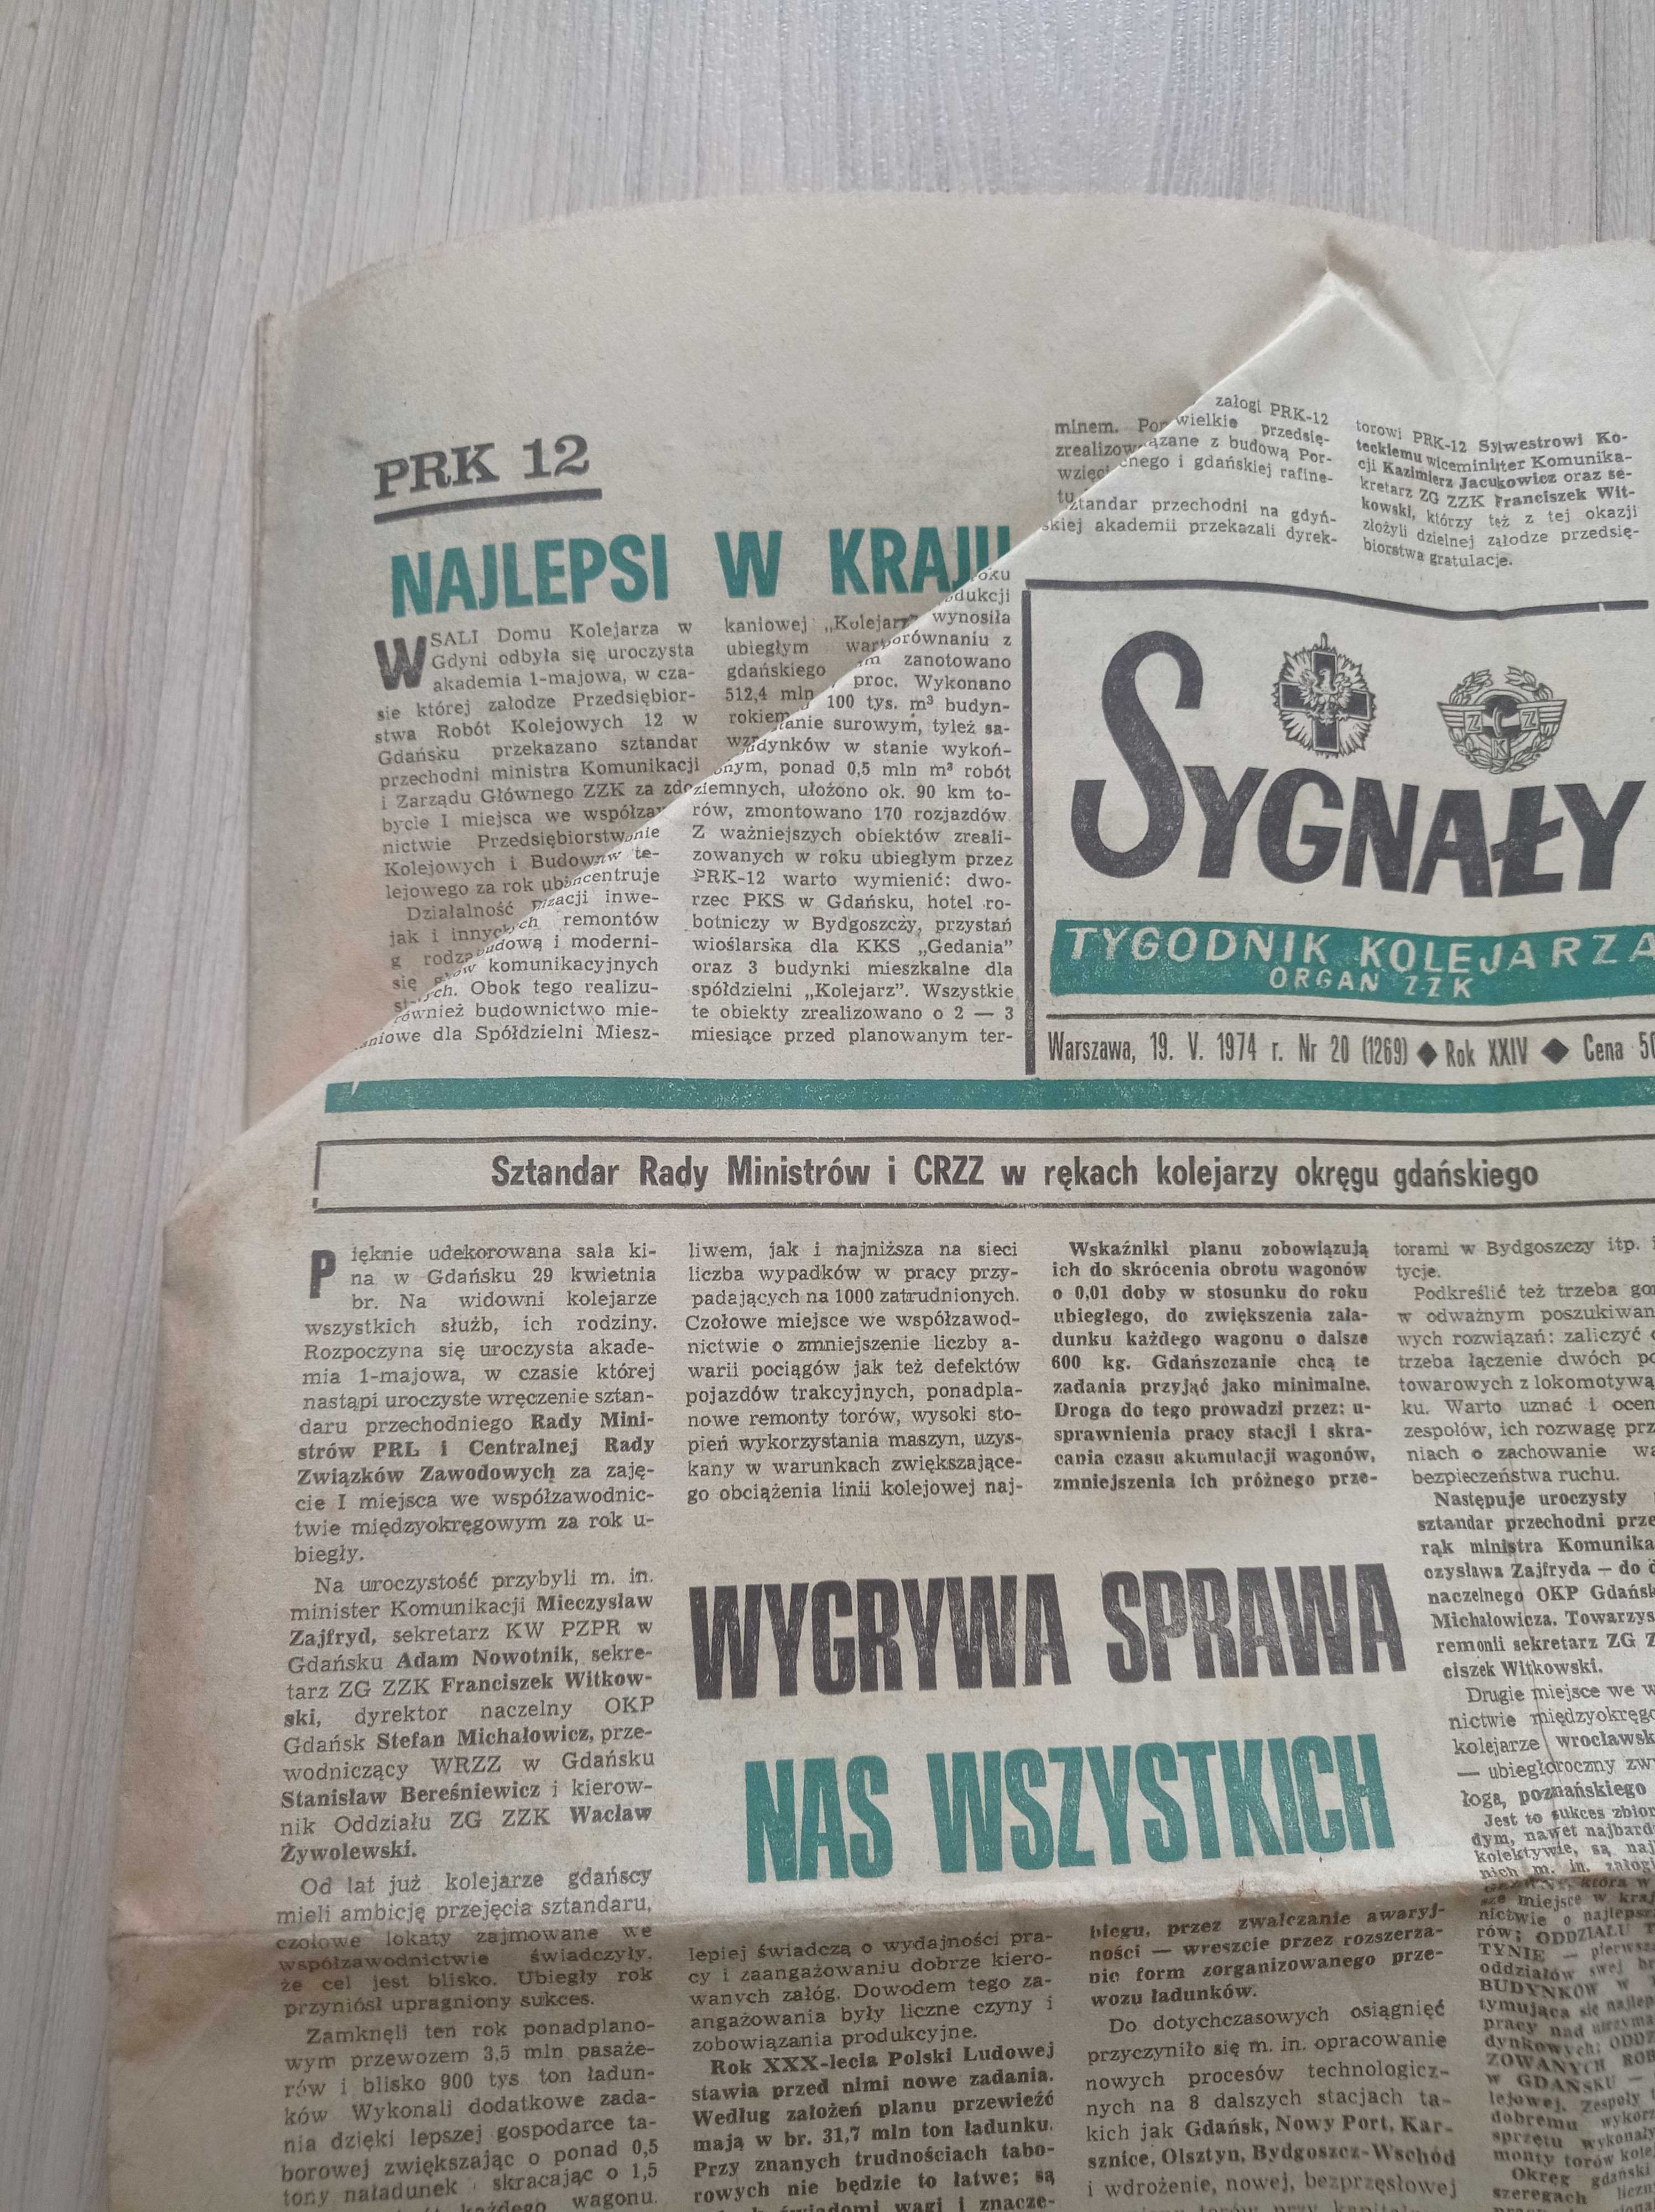 Sygnały tygodnik kolejarza nr 19/1974, 19 maja 1974